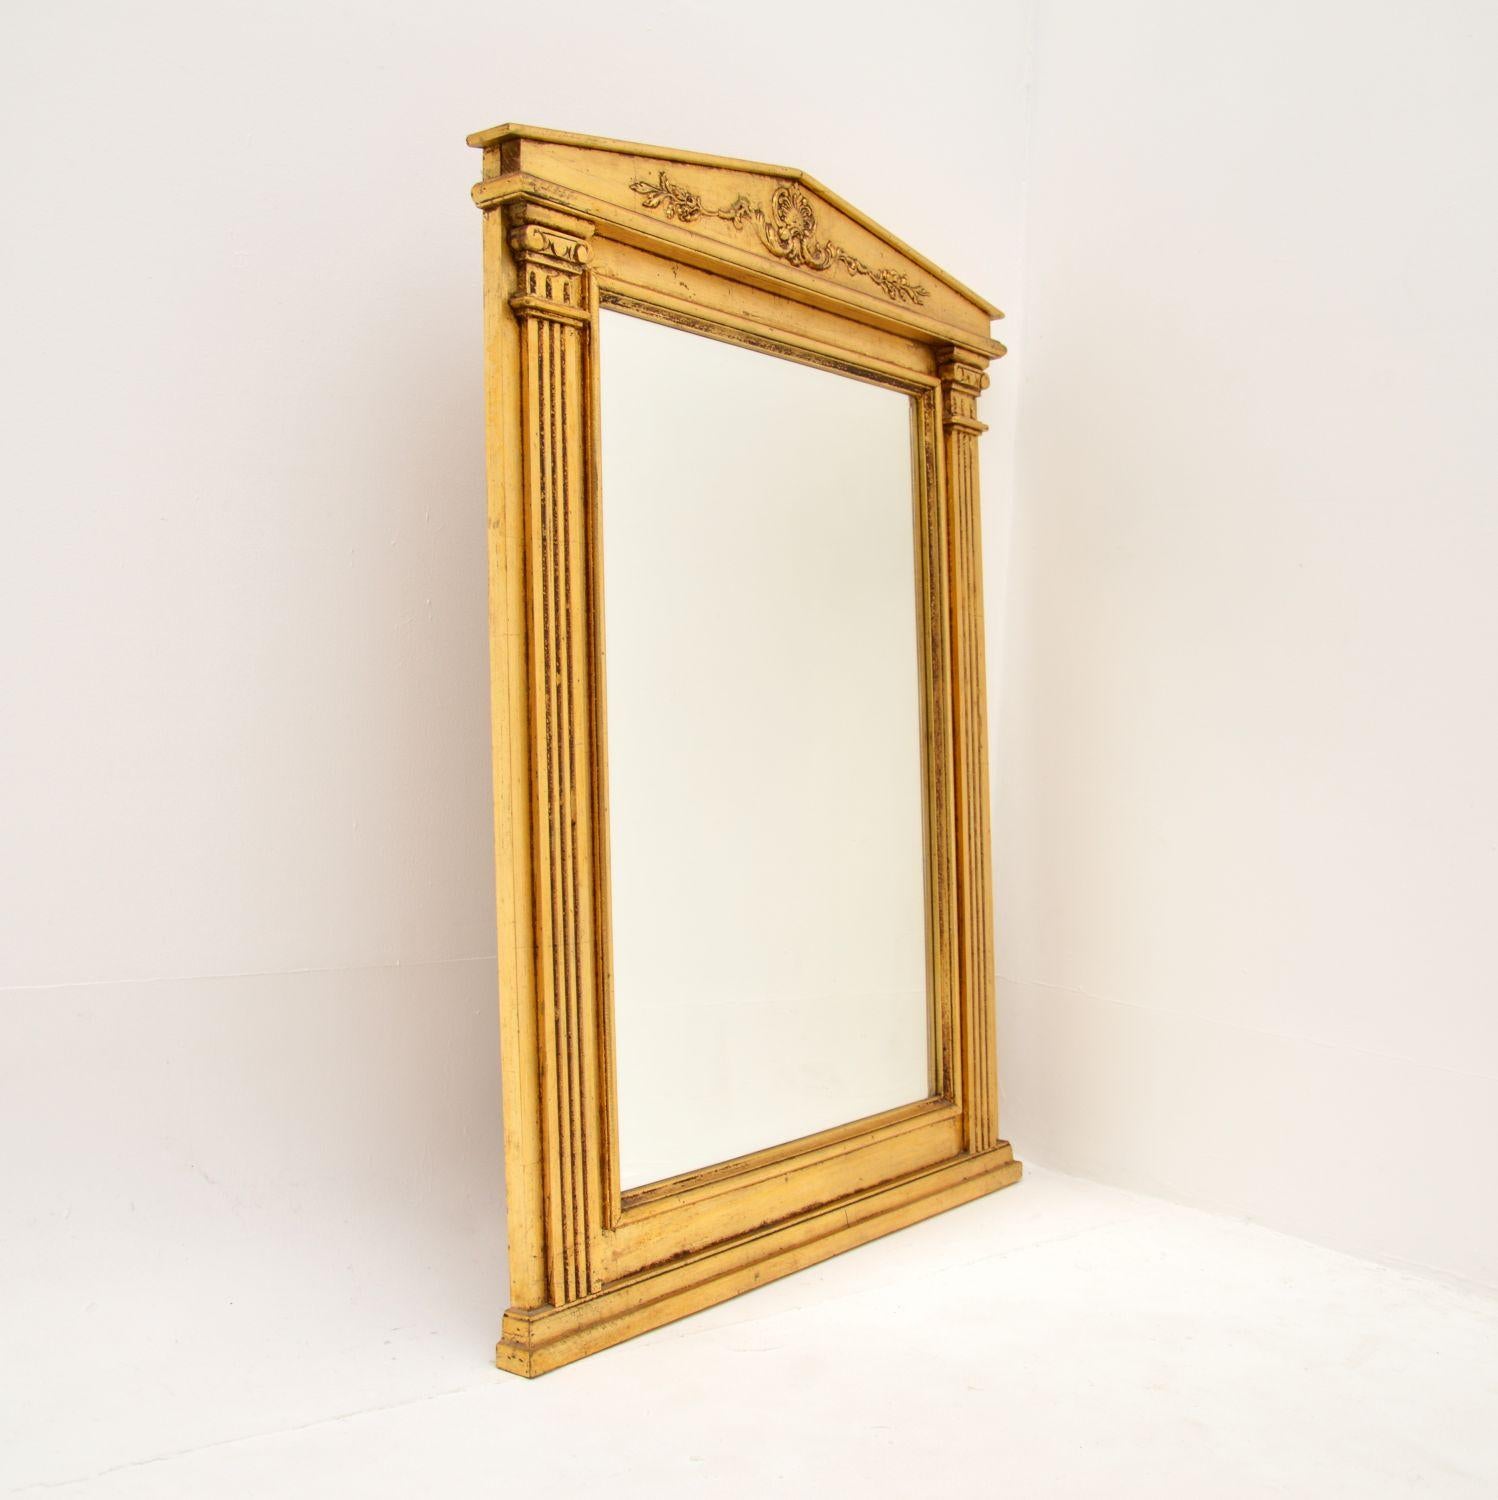 Ein schöner antiker italienischer neoklassischer Spiegel aus vergoldetem Holz. Sie wurde in Italien hergestellt und stammt aus den 1930-50er Jahren.

Es ist von hervorragender Qualität und hat eine großartige Größe, ziemlich groß und beeindruckend